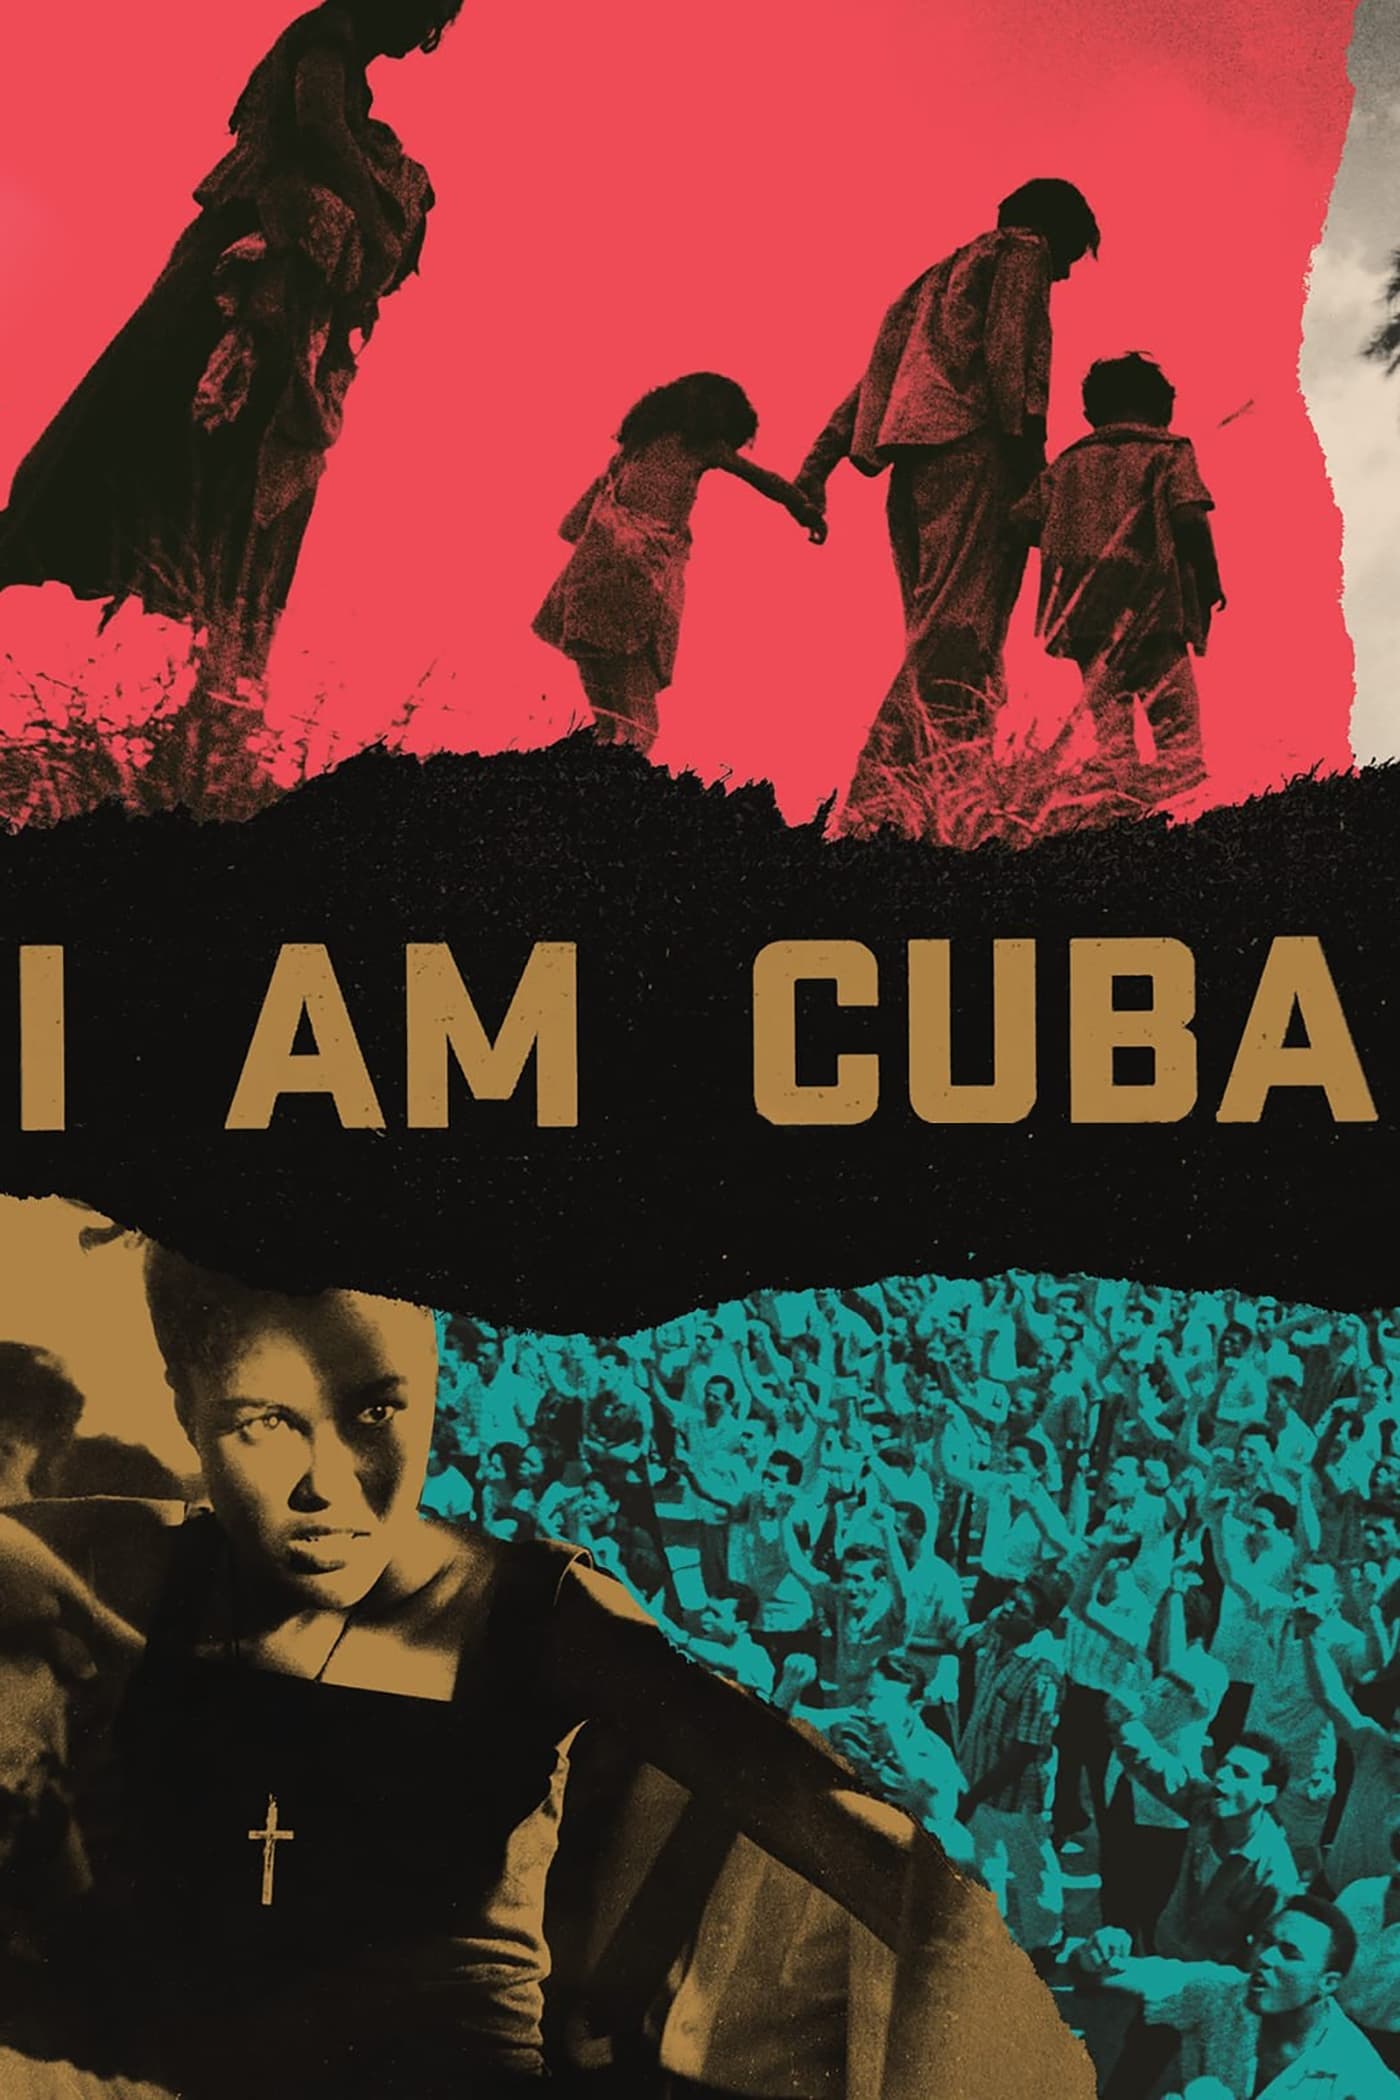 I Am Cuba